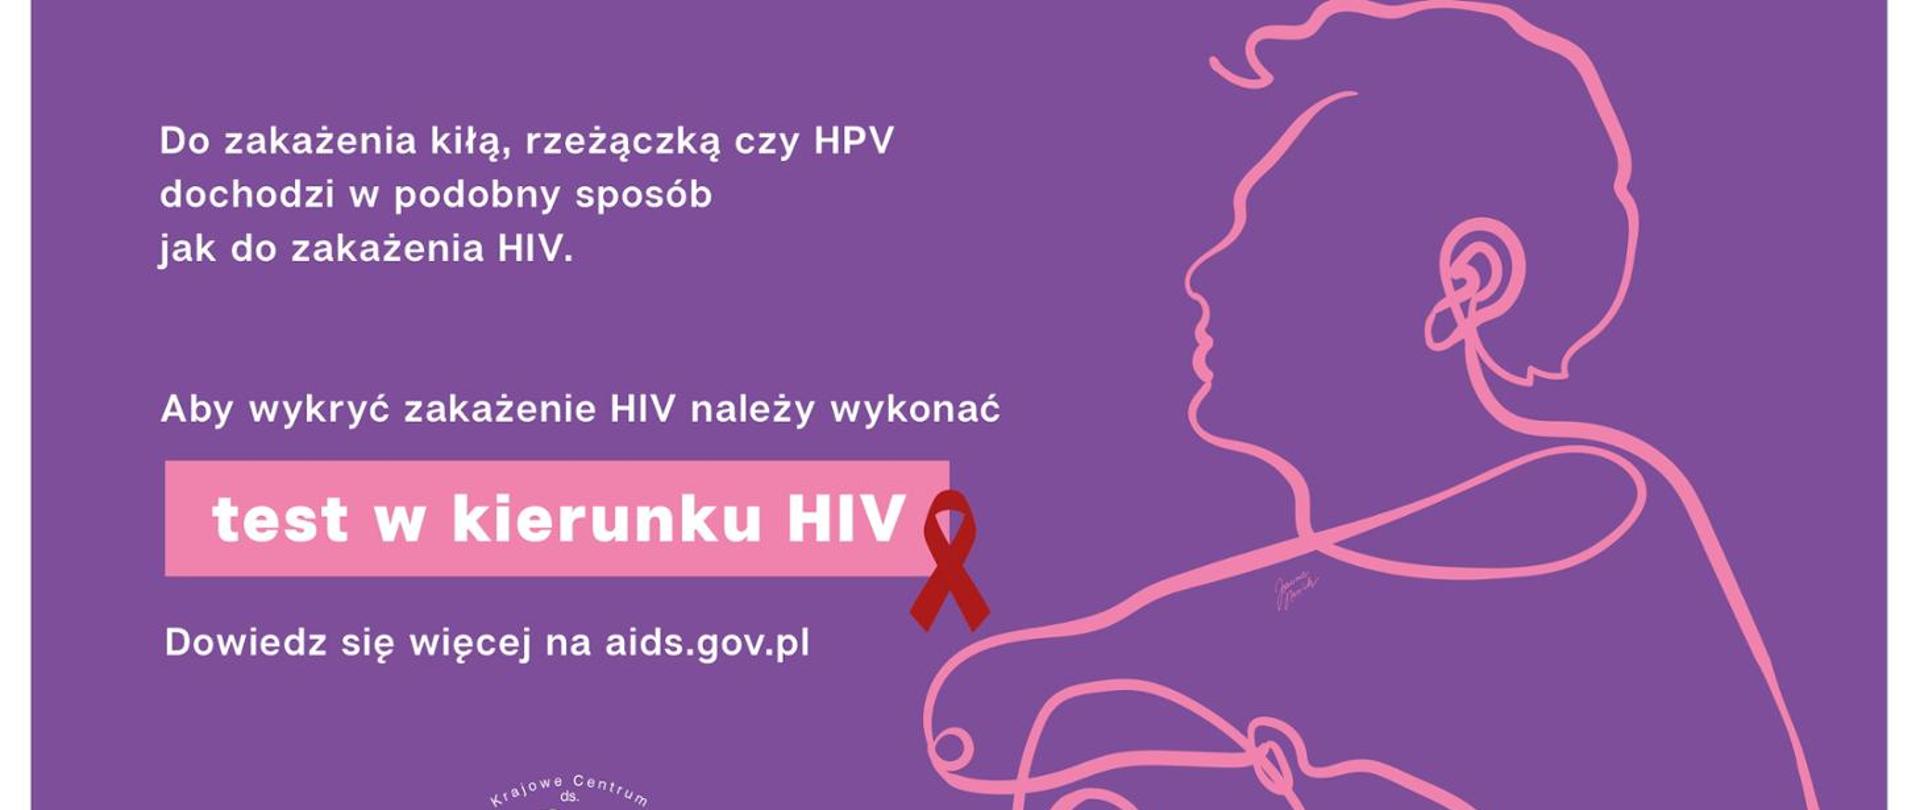 Plakat dot. HIV